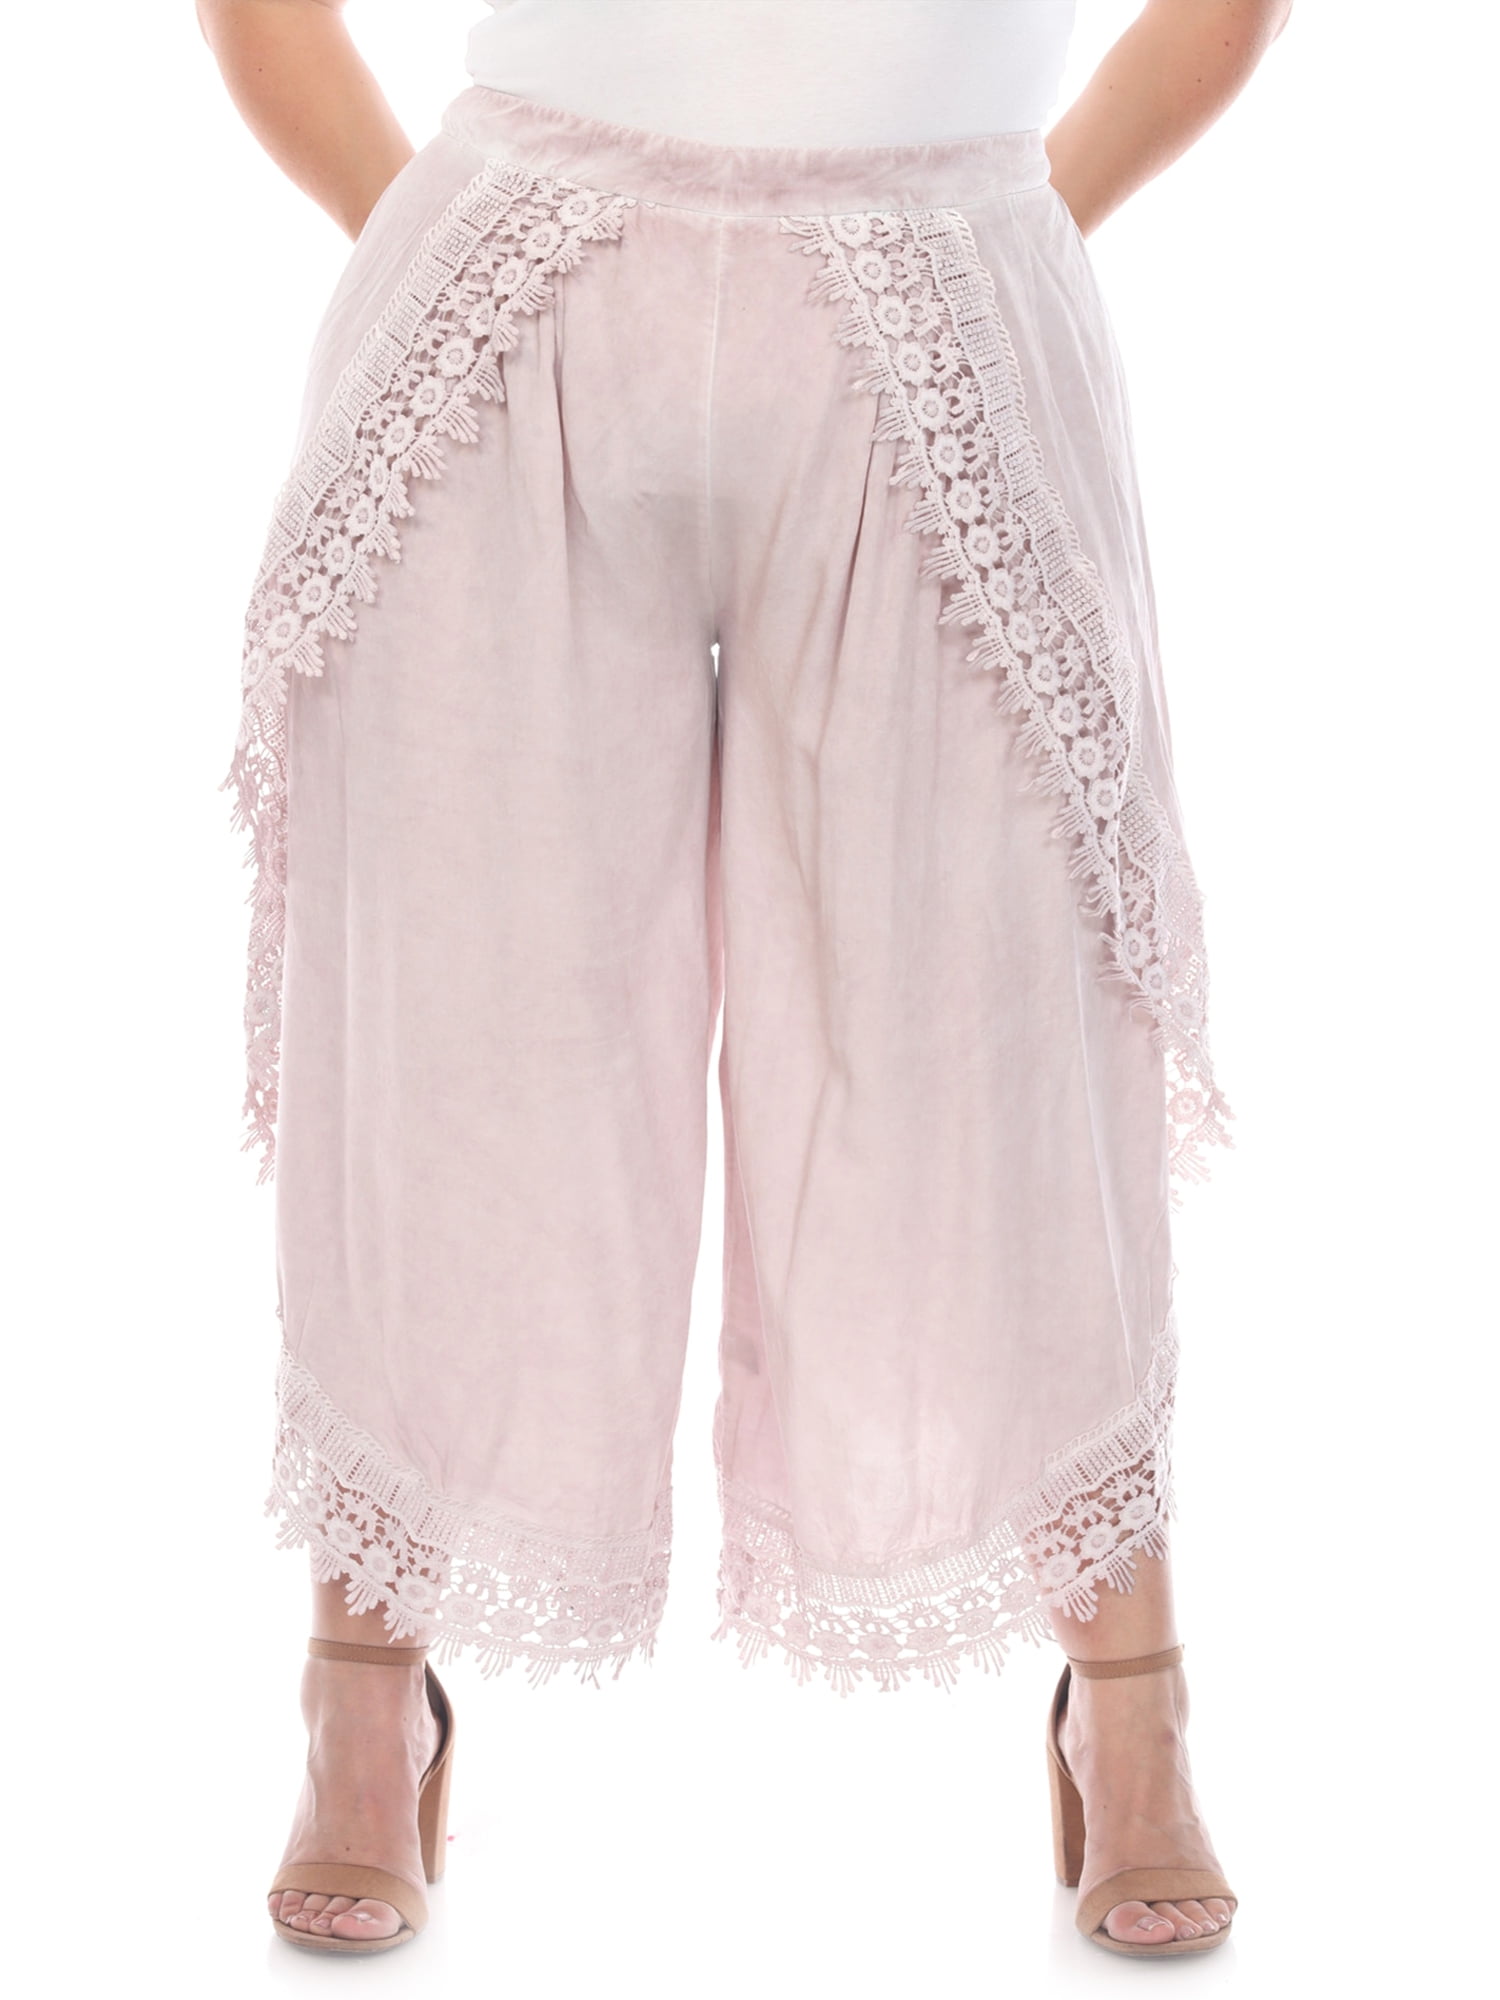 Simply Couture Women's Plus Size Crochet Pant - Walmart.com